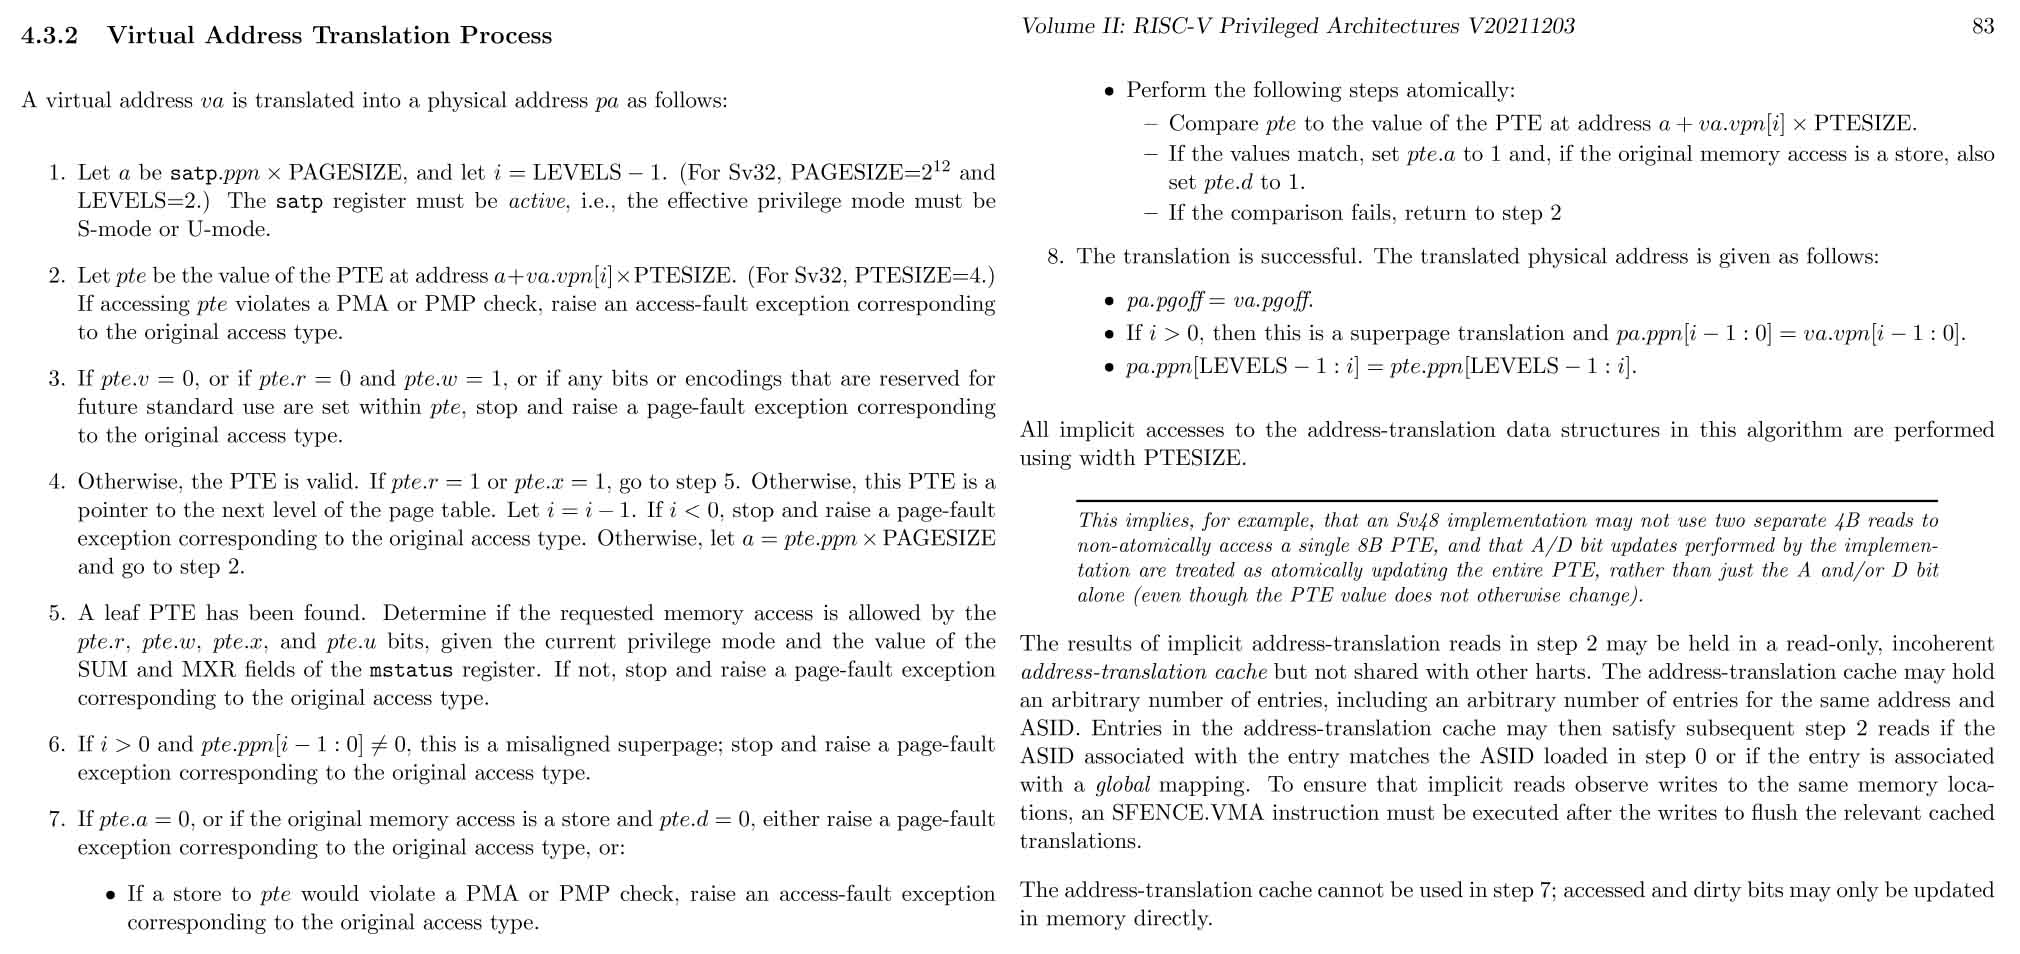 Virtual Address Translation Process (Page 82)